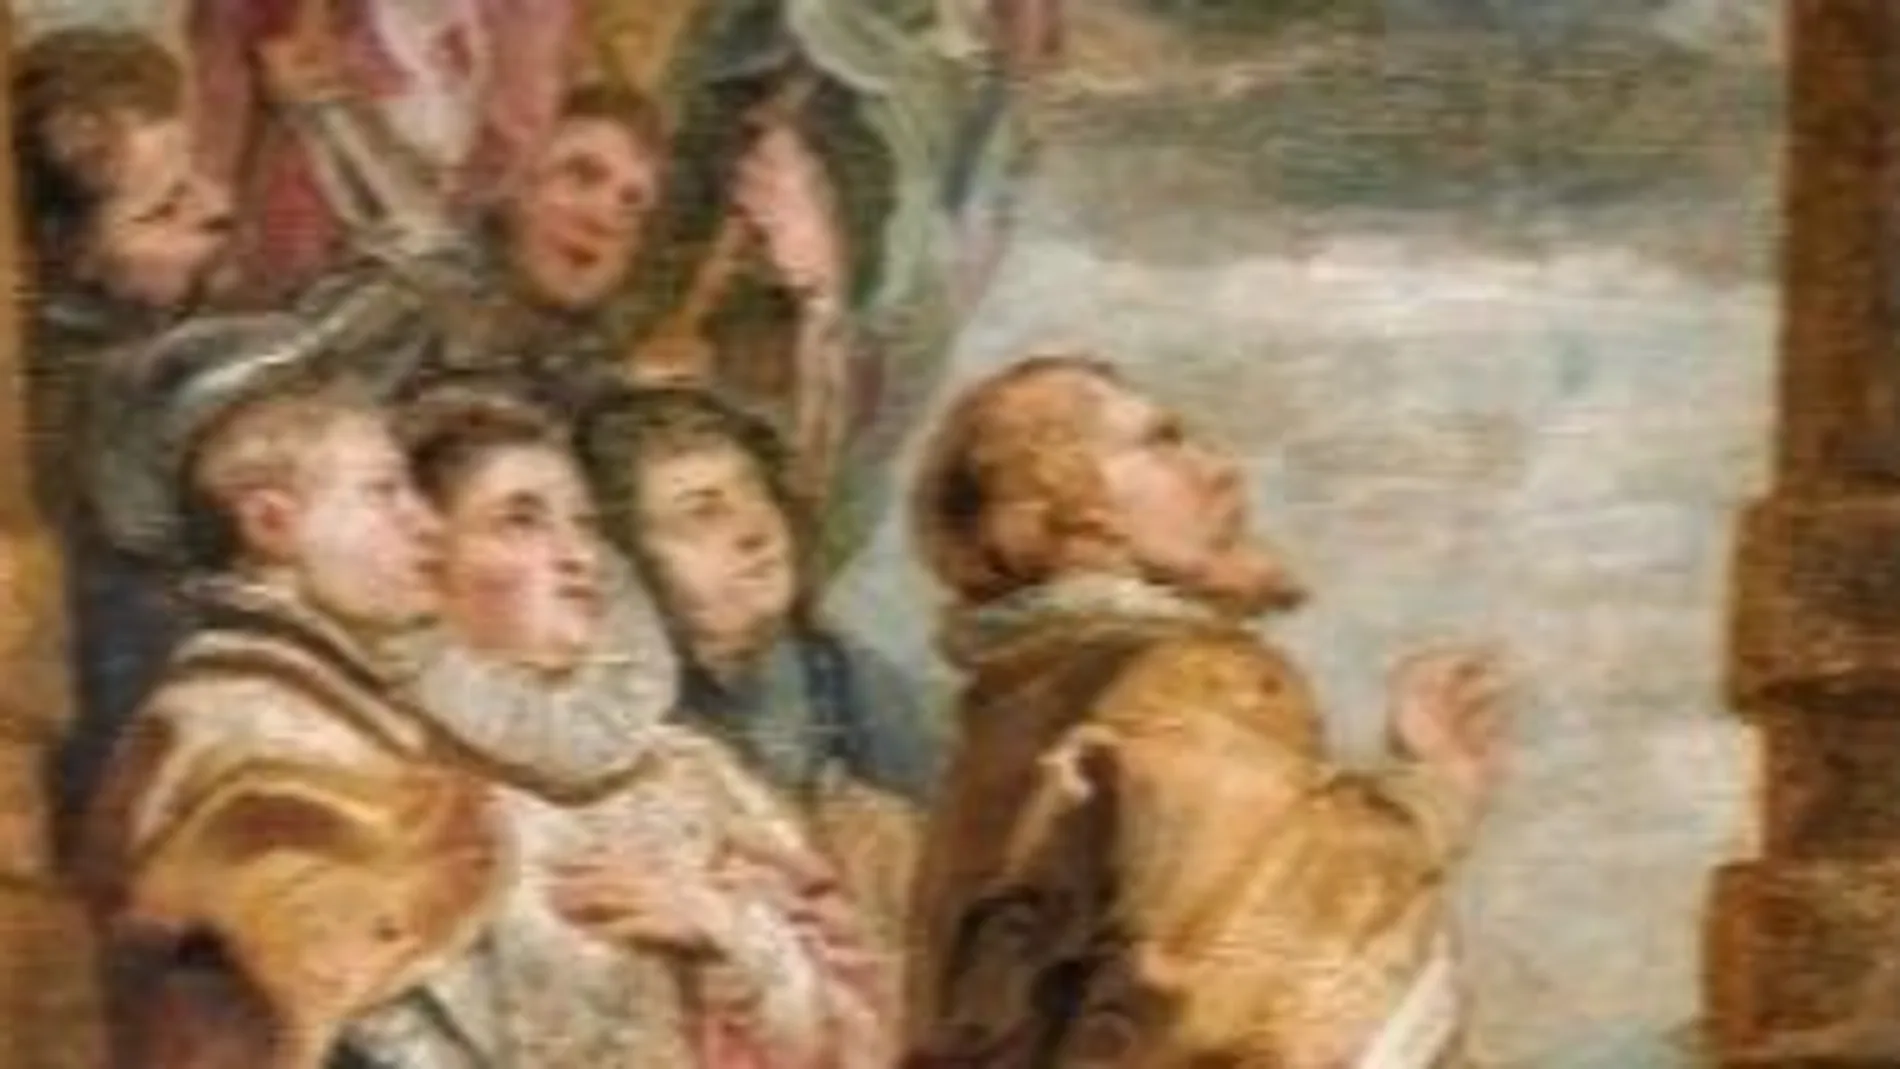 Boceto de los tapices "El Triunfo de la Eucaristía", encargado por Isabel Clara Eugenia en 1625 para una serie de tapices destinados al Monasterio de las Descalzas Reales en Madrid.